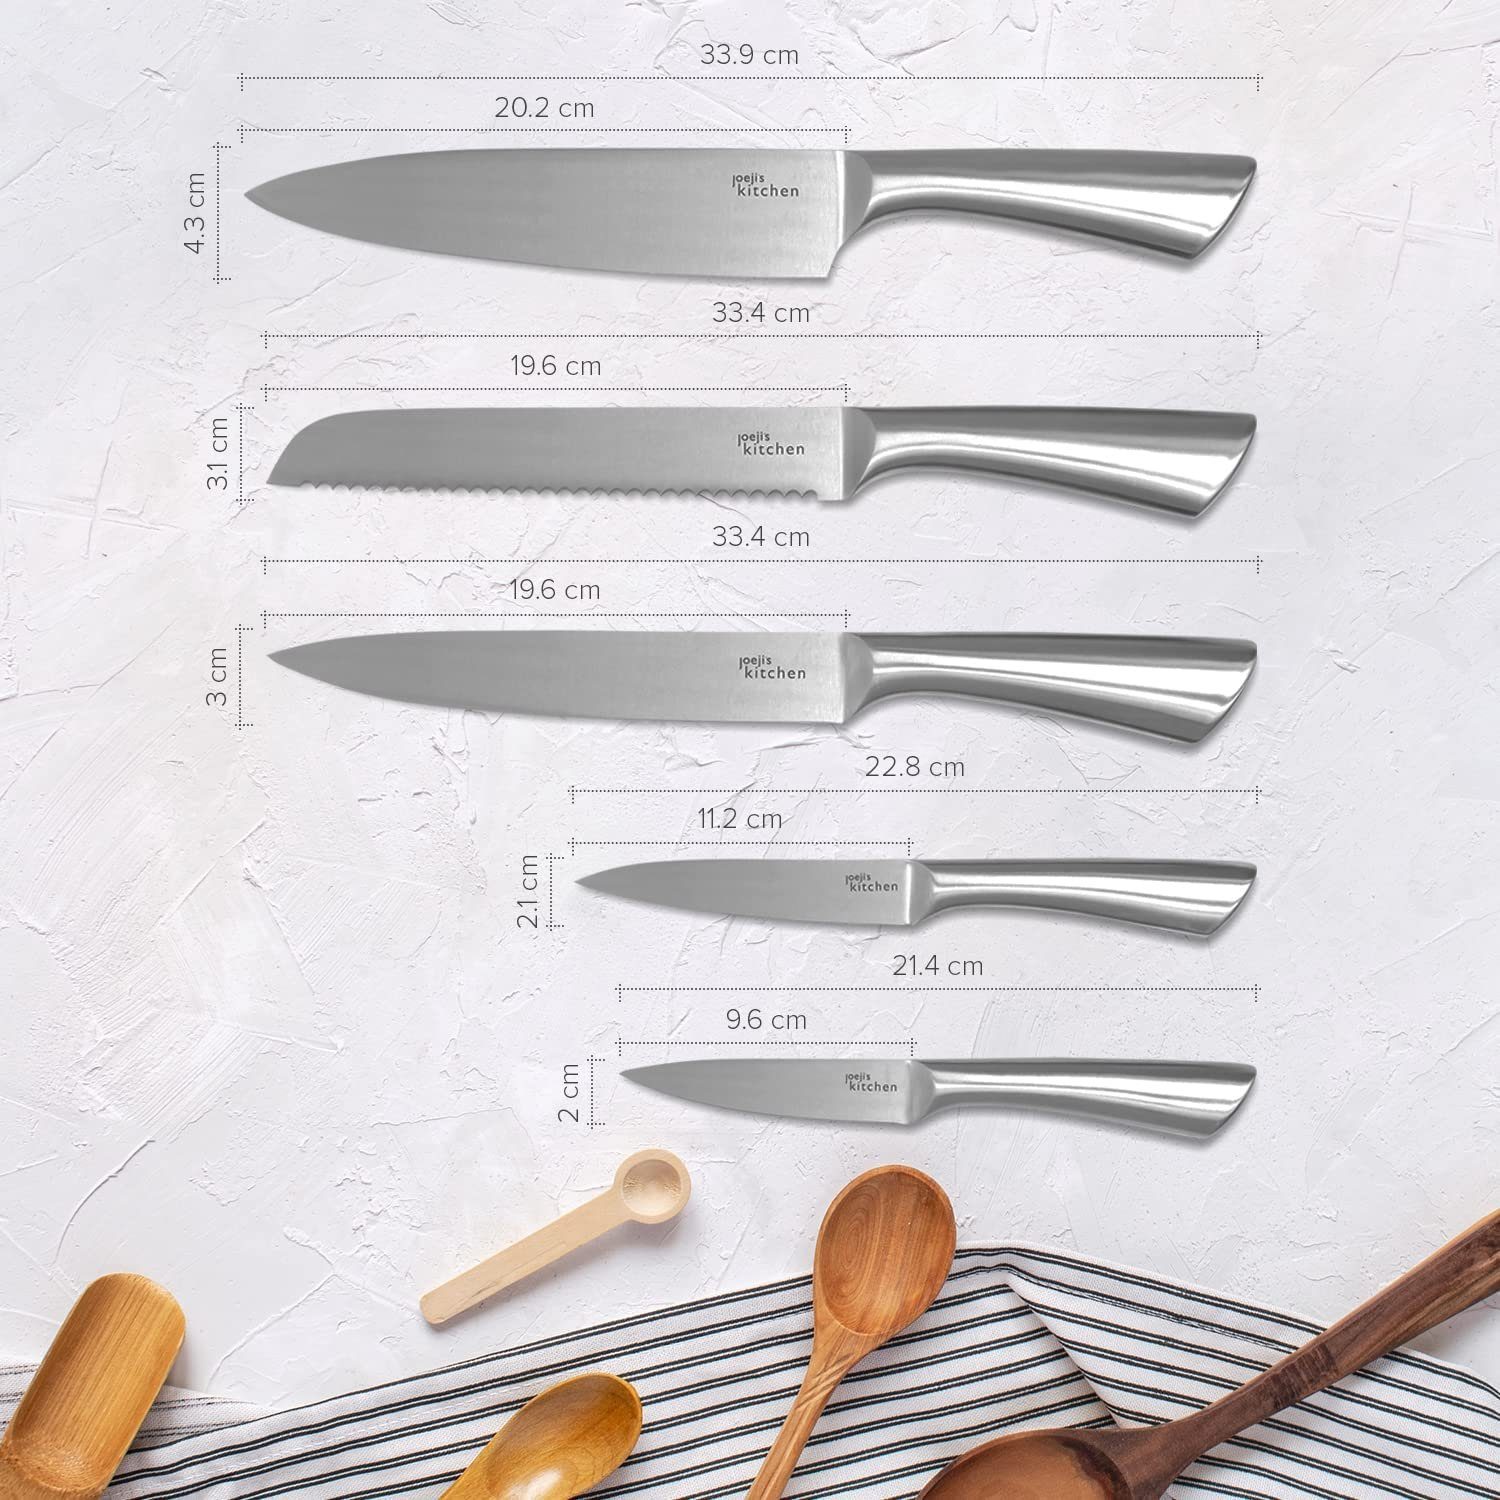 Universalküchenmesser Küchenmesser 5-in-1 aus JOEJI’S Scharfe Edelstahl KITCHEN Set Messerset -